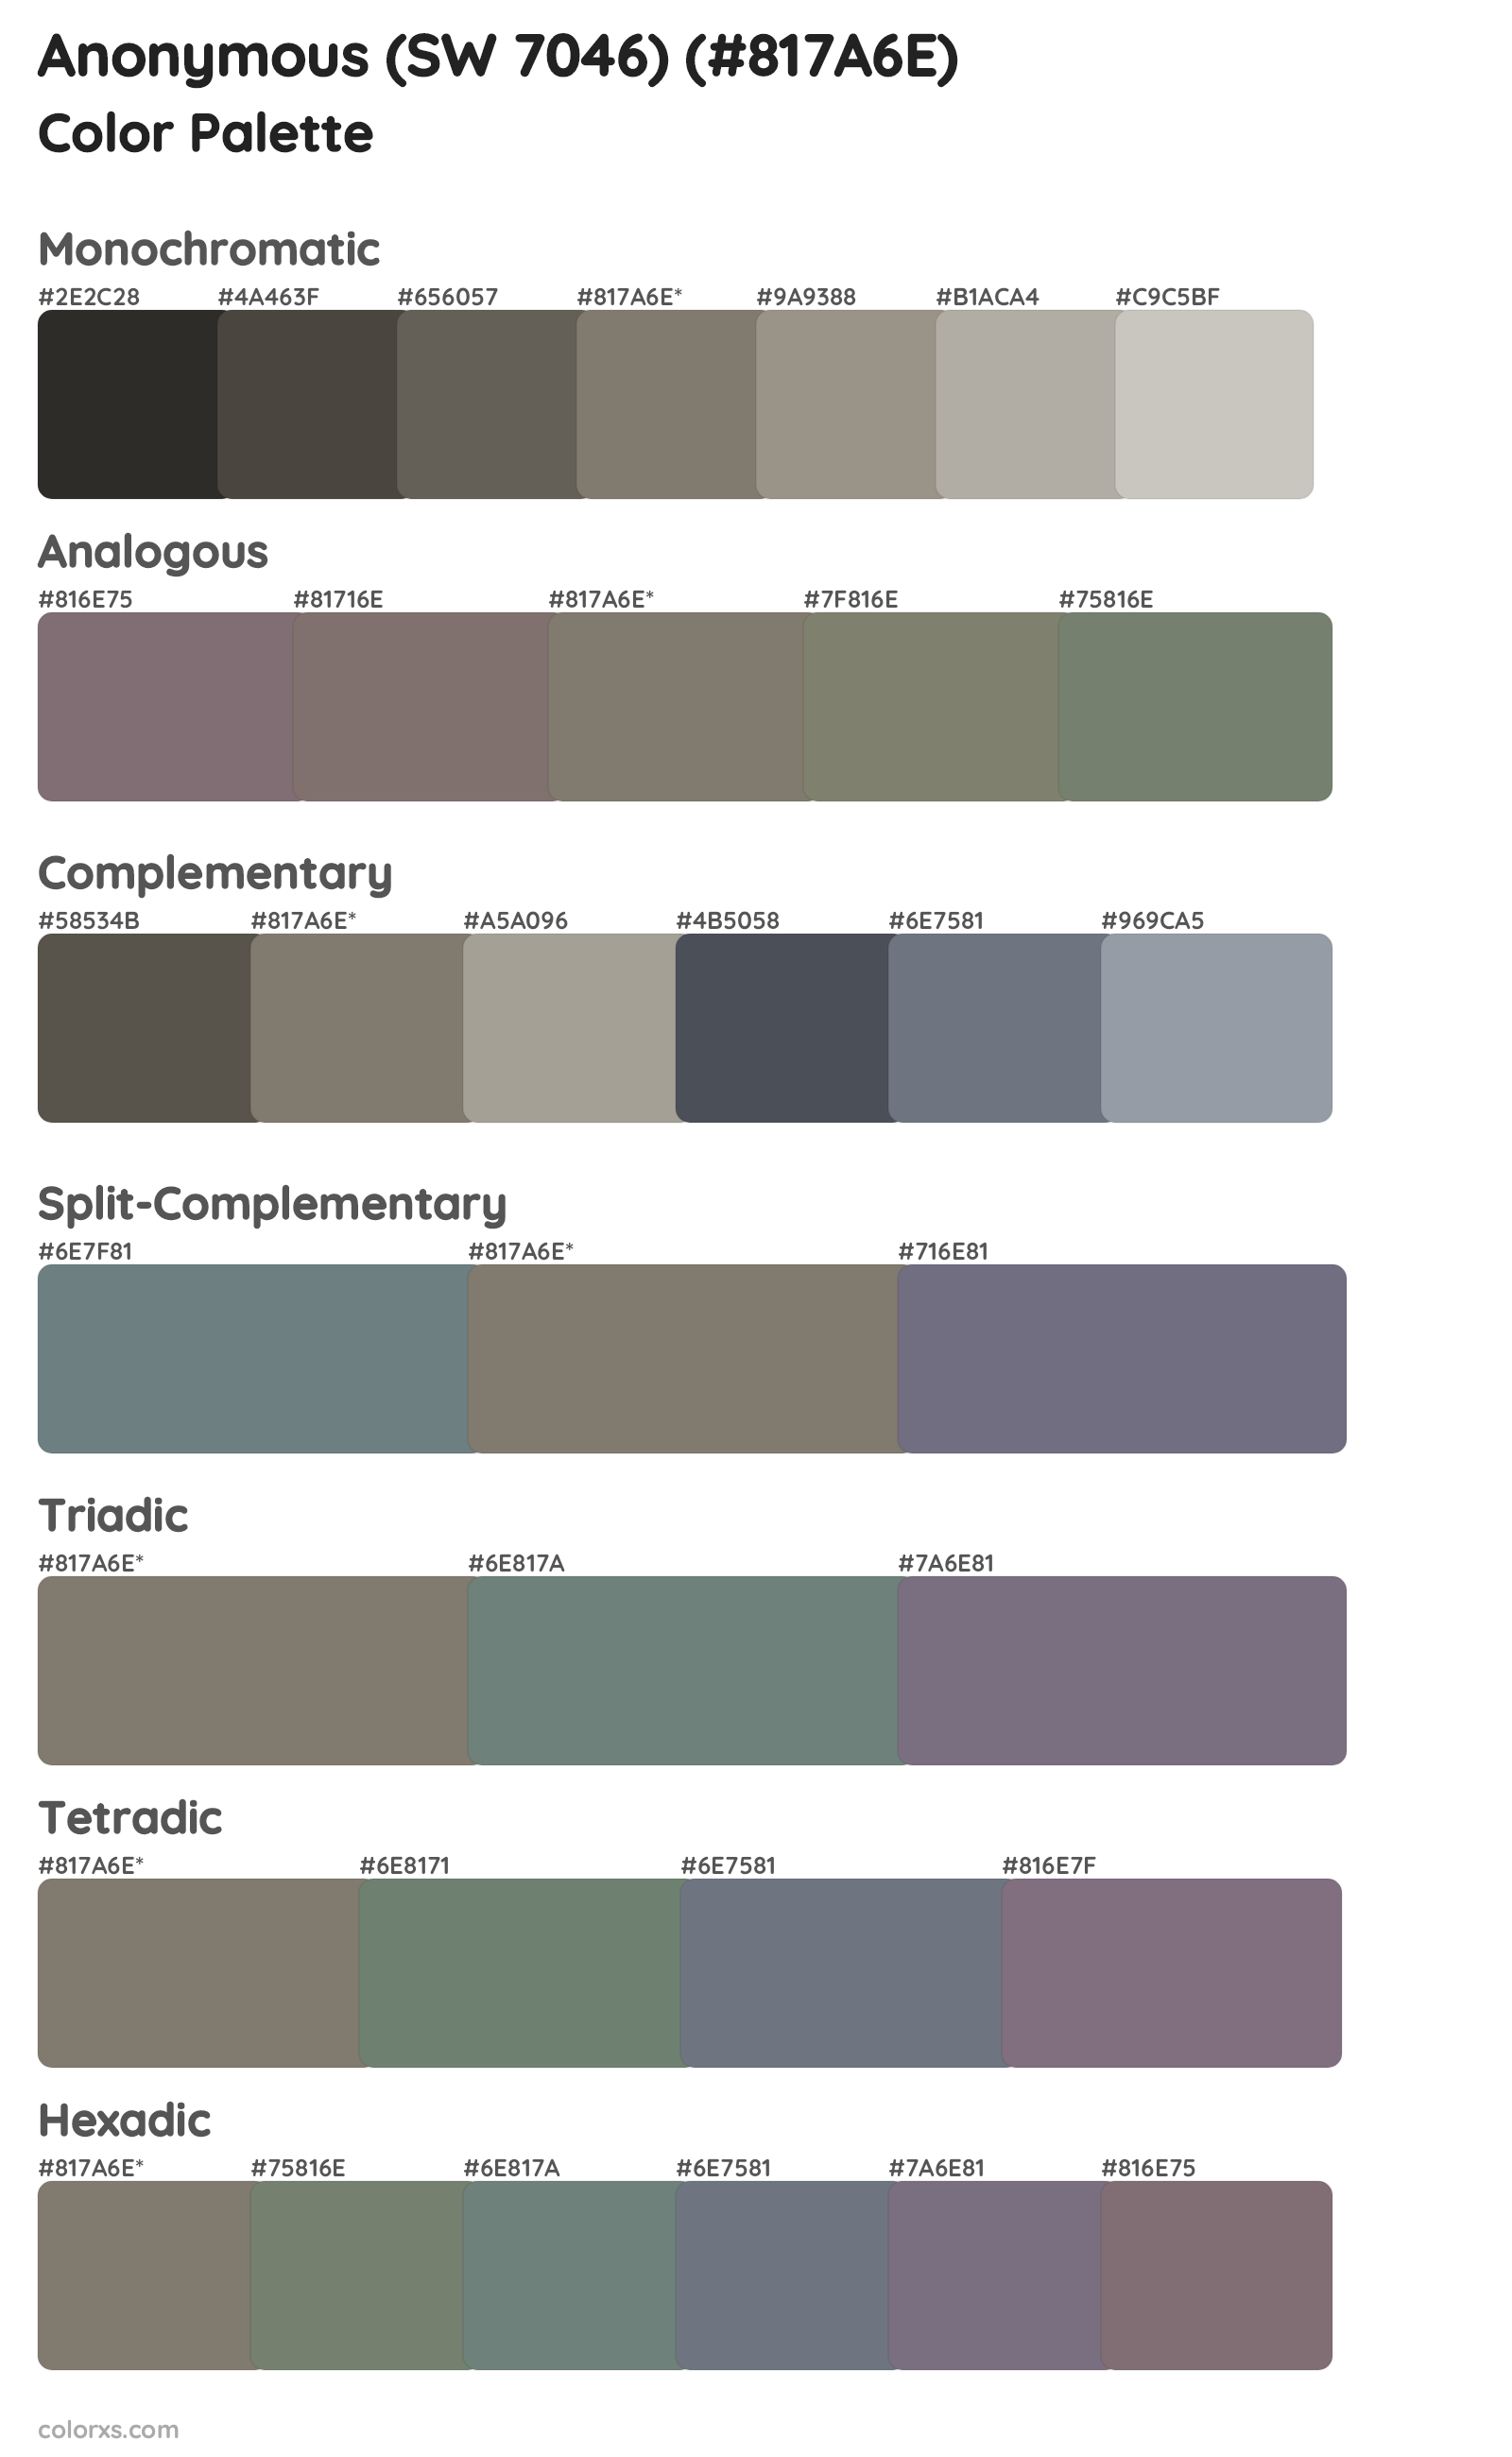 Anonymous (SW 7046) Color Scheme Palettes